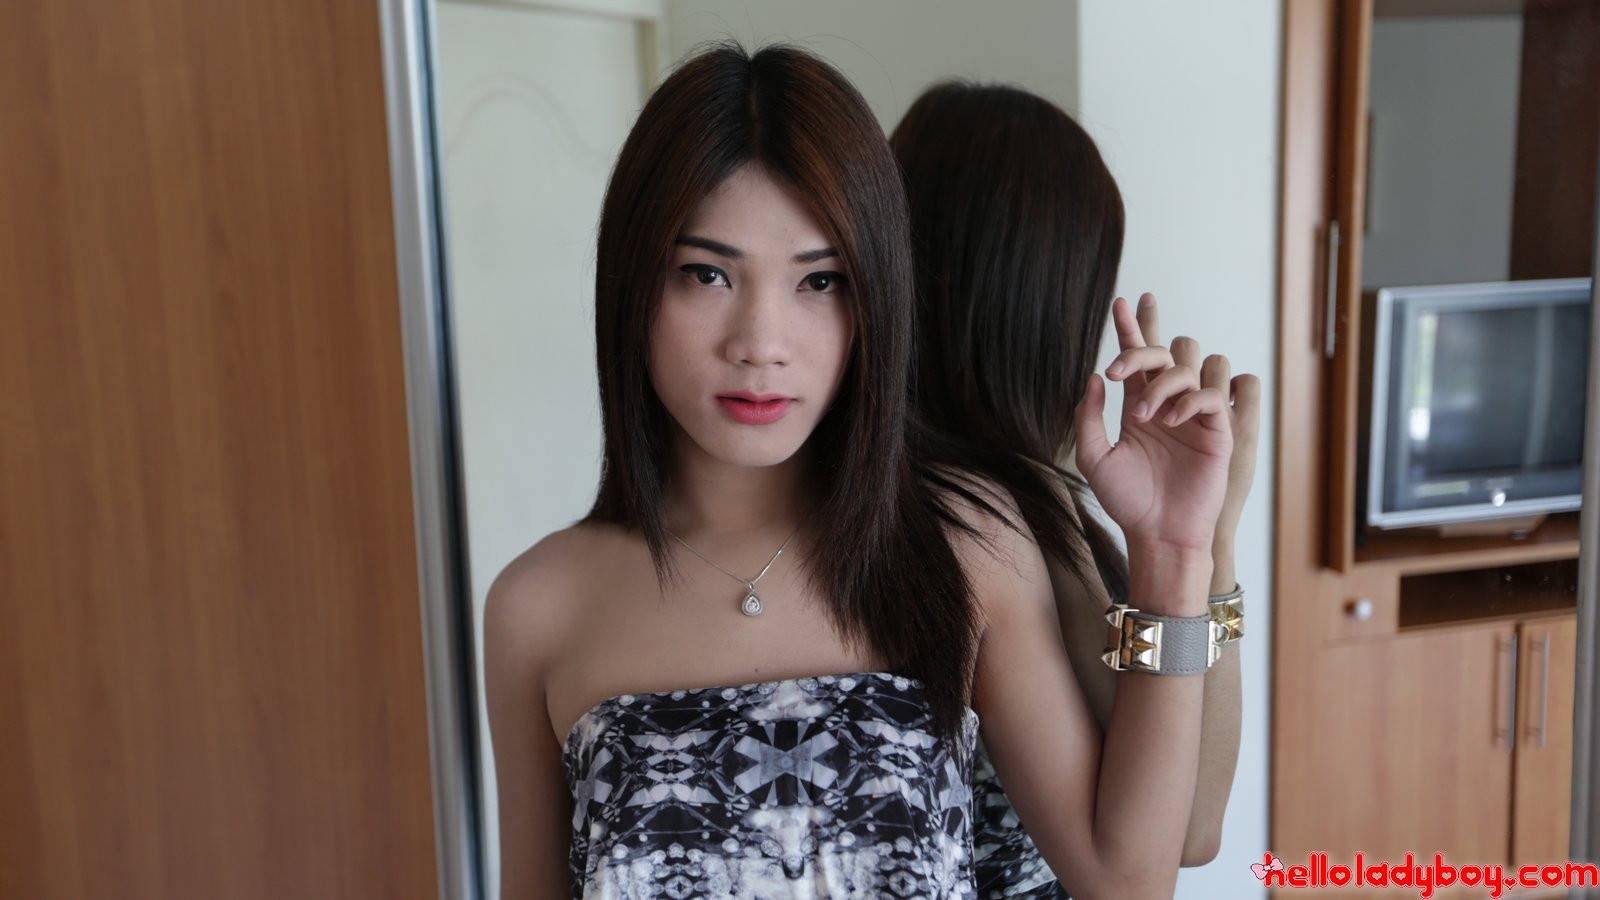 Sexy thailändischer Ladyboy saugt den Schwanz ihres weißen Touristenfreundes
 #77877348